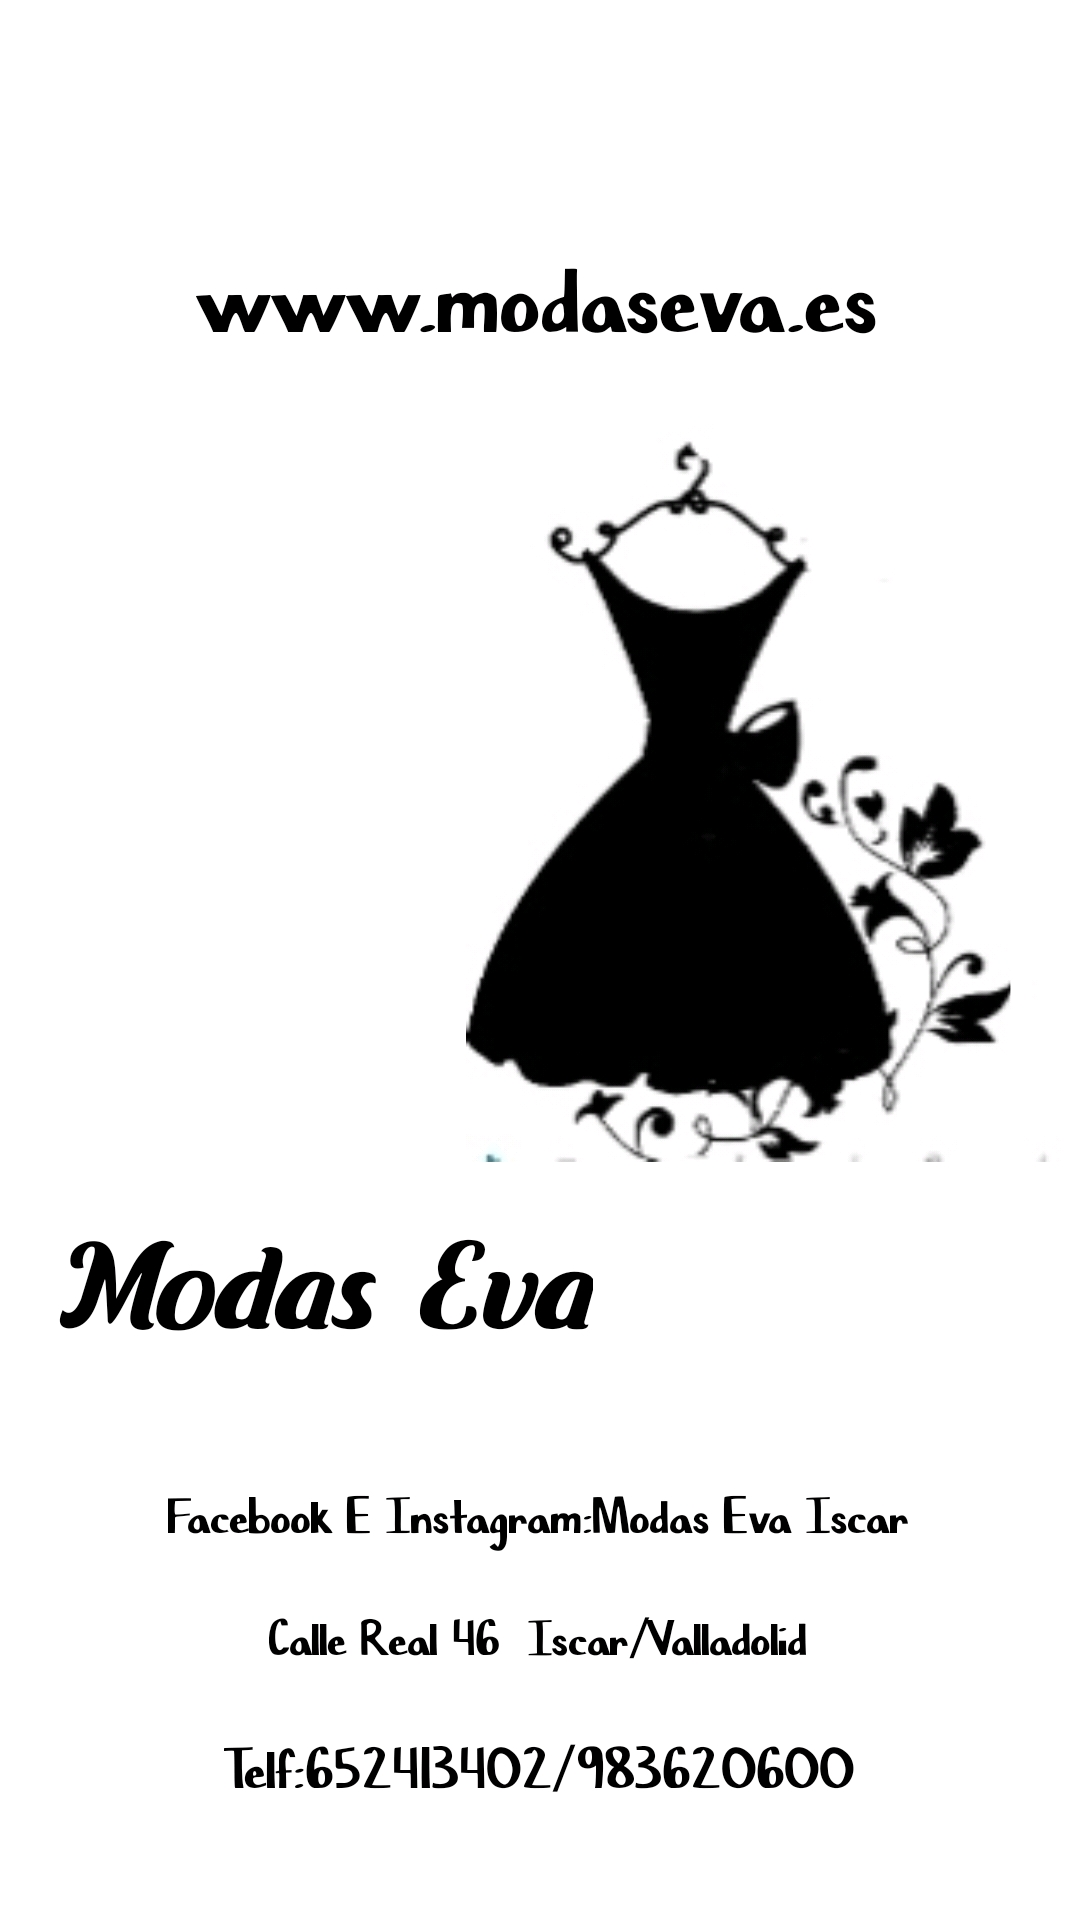 logo-www.modaseva.es